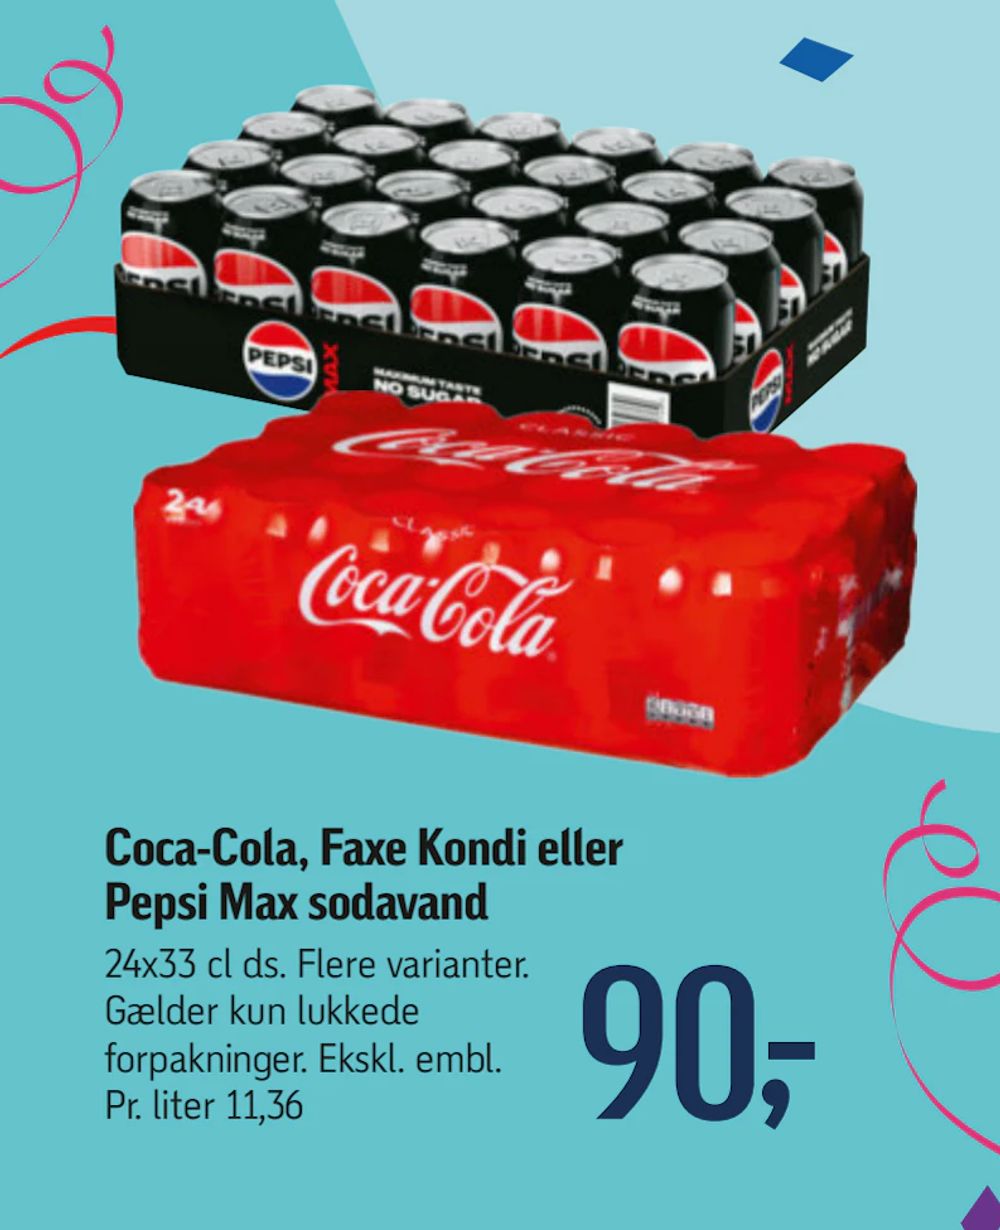 Tilbud på Coca-Cola, Faxe Kondi eller Pepsi Max sodavand fra føtex til 90 kr.